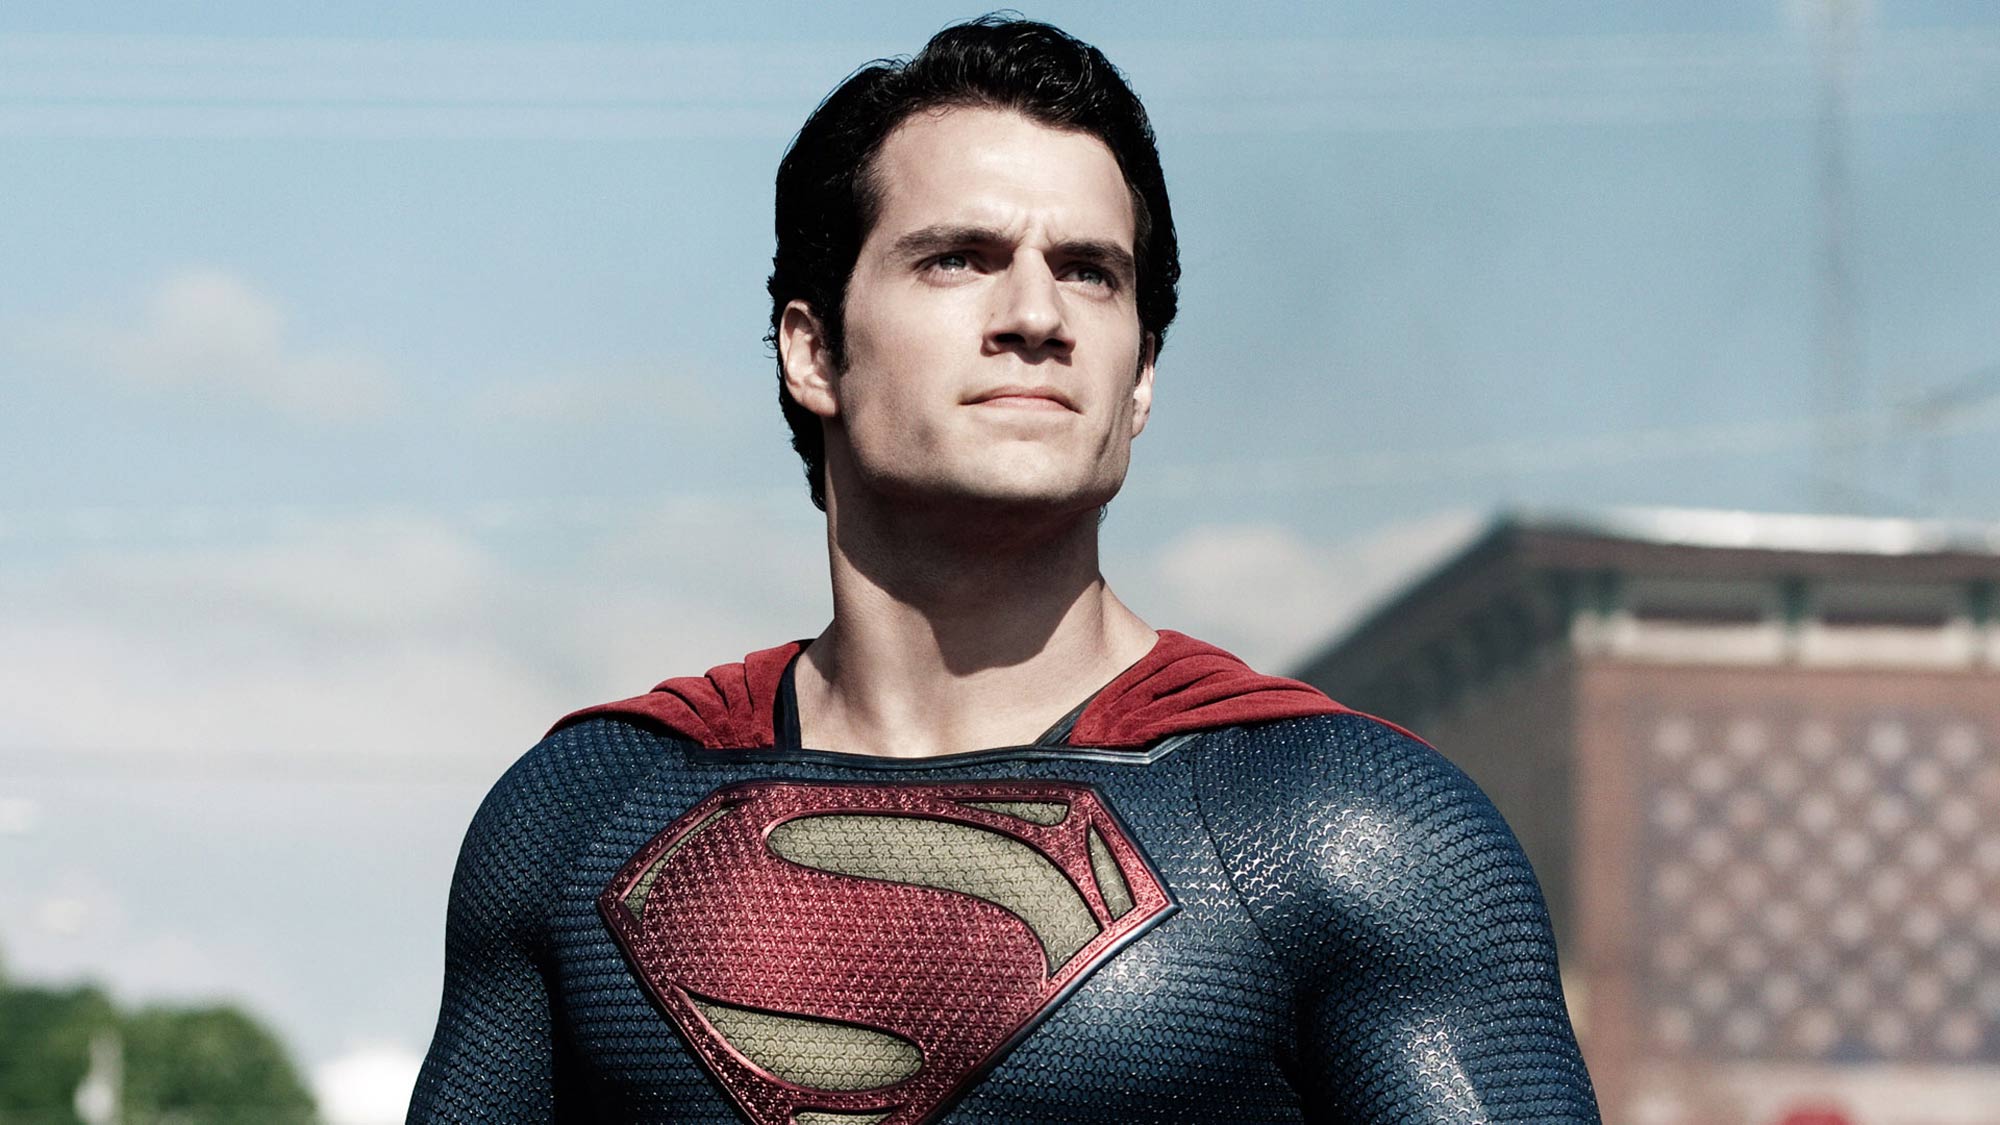 הנרי קאוויל בתפקיד קלארק קנט/סופרמן בסרט איש הפלדה, הסרט הראשון של DC לפי סדר יציאתו לאקרנים